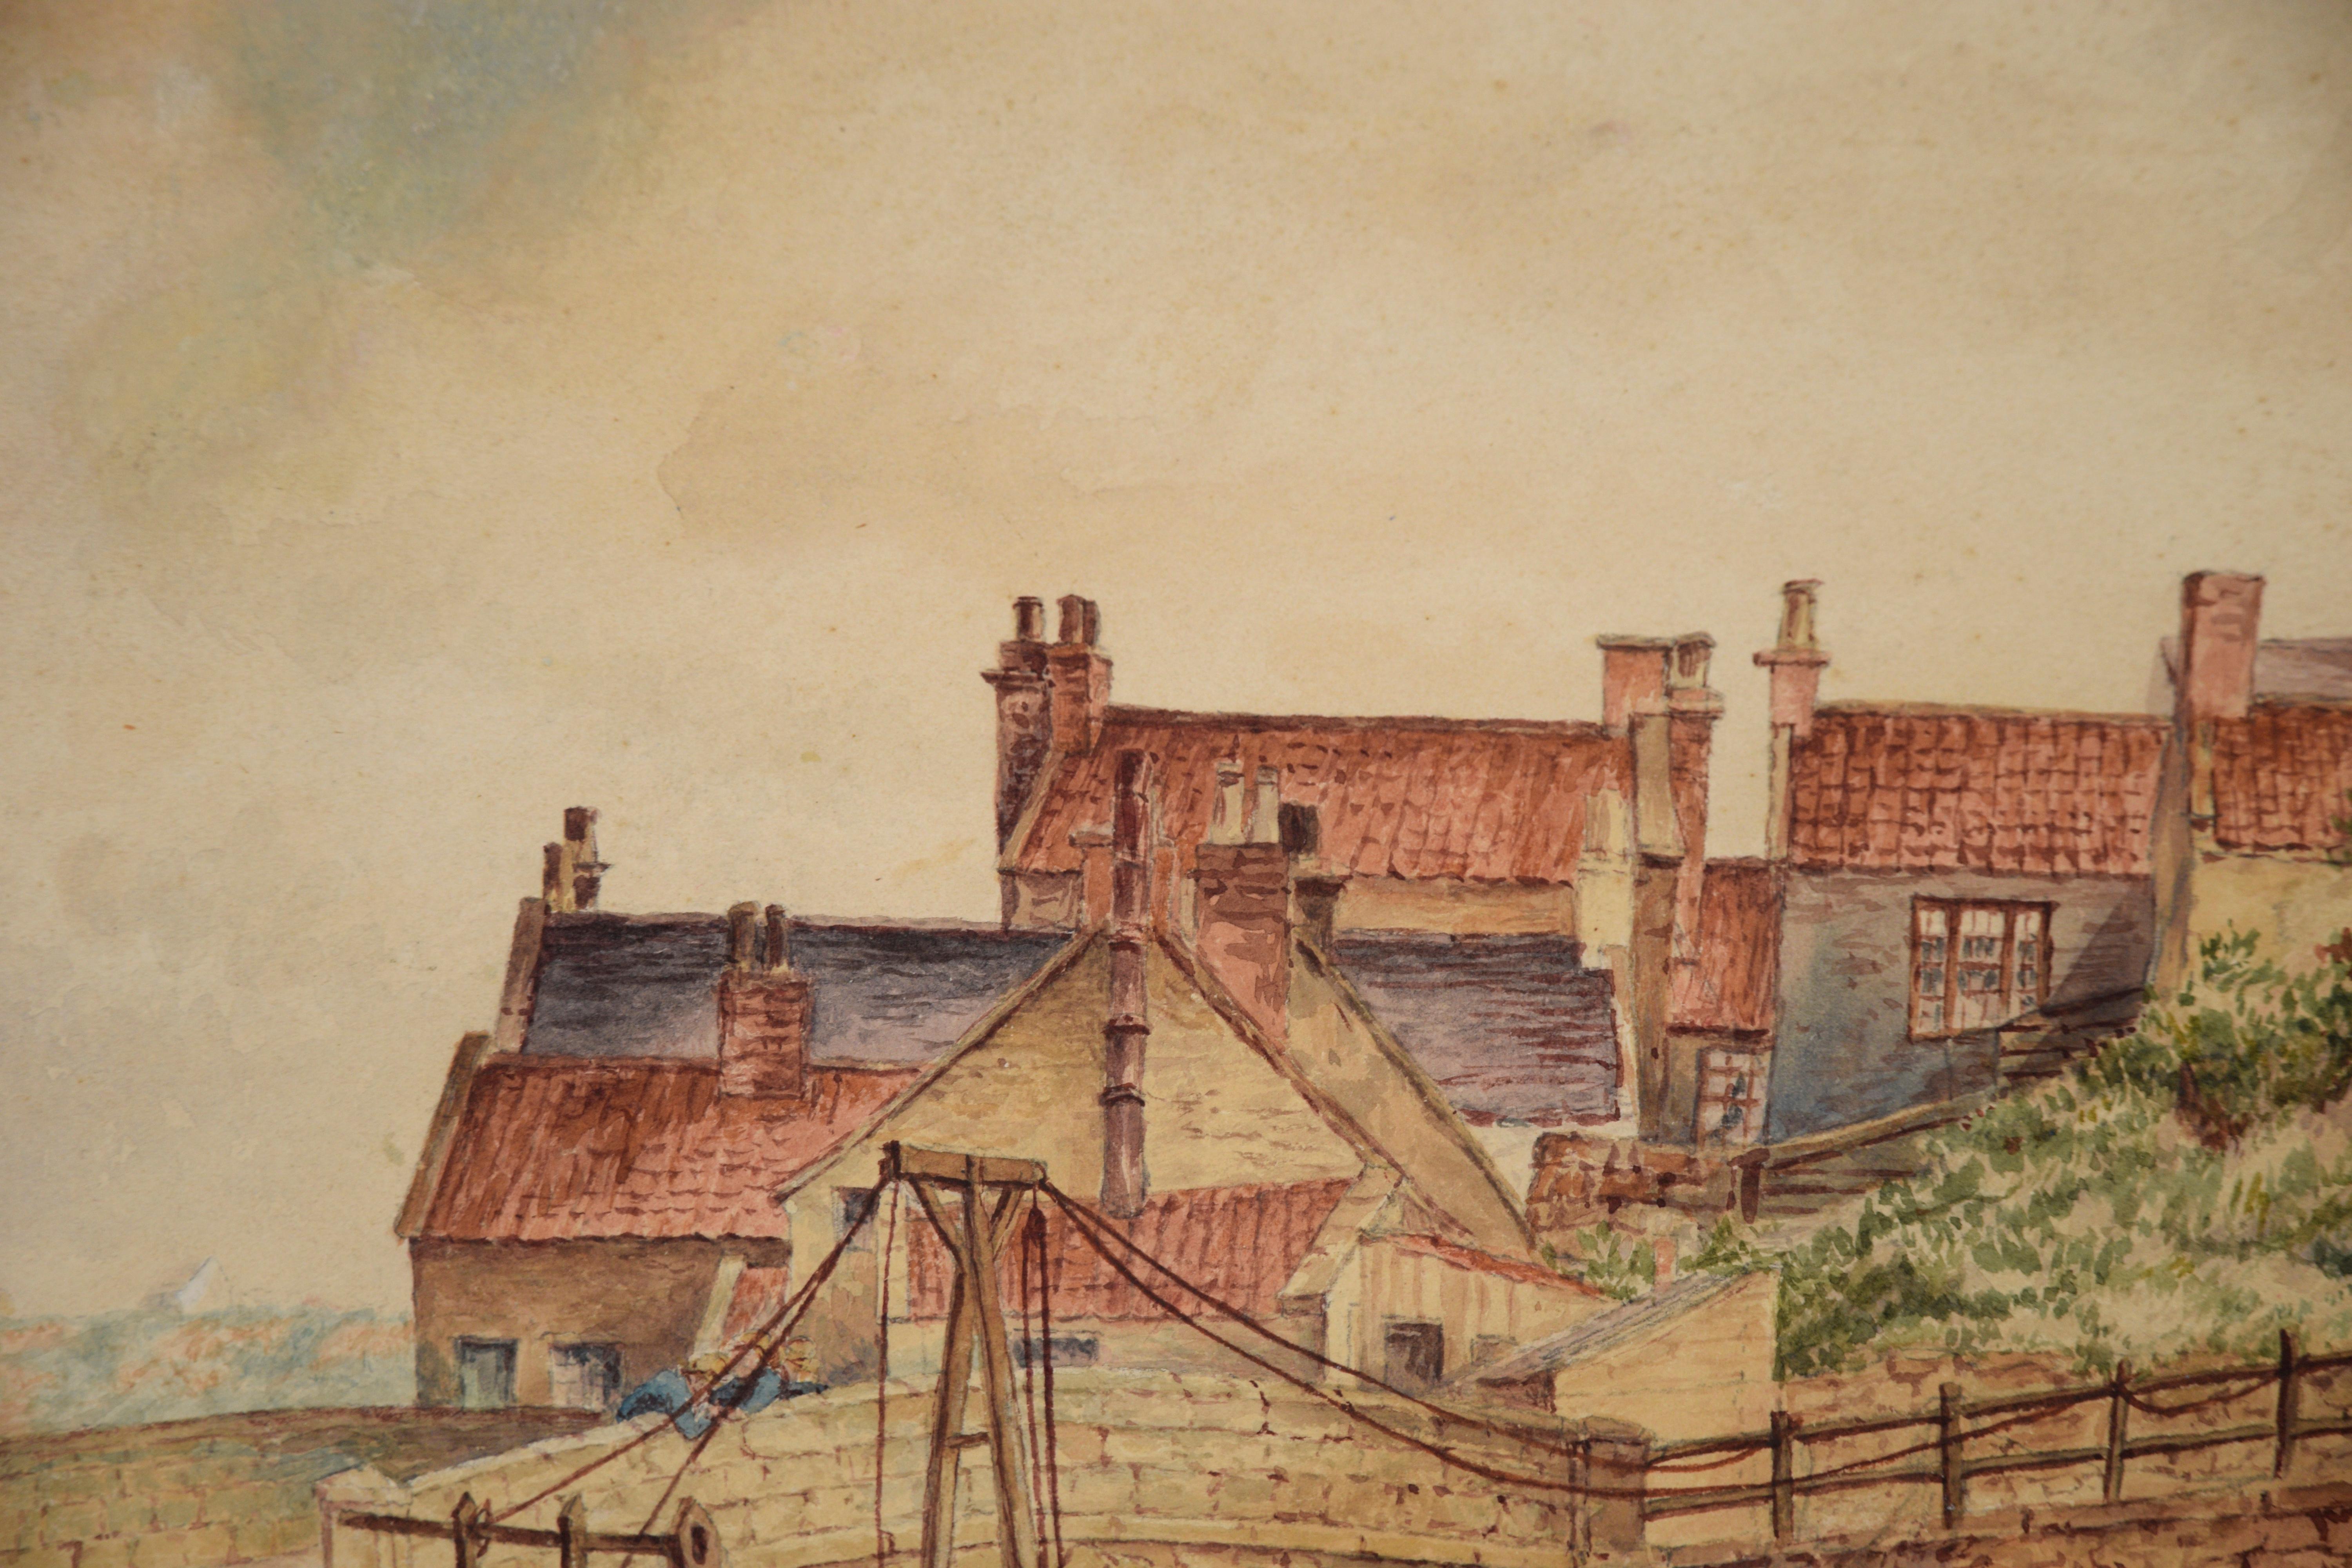 Englische Landschaft - Aquarell auf Papier

Aquarell mit der Darstellung einer amerikanischen Landschaft von Oliver Louis Tweddle (Engländer, 1860). Vier Fischer stehen auf einer Brücke, rechts von der Brücke stehen bunte Landhäuser. Der weiße